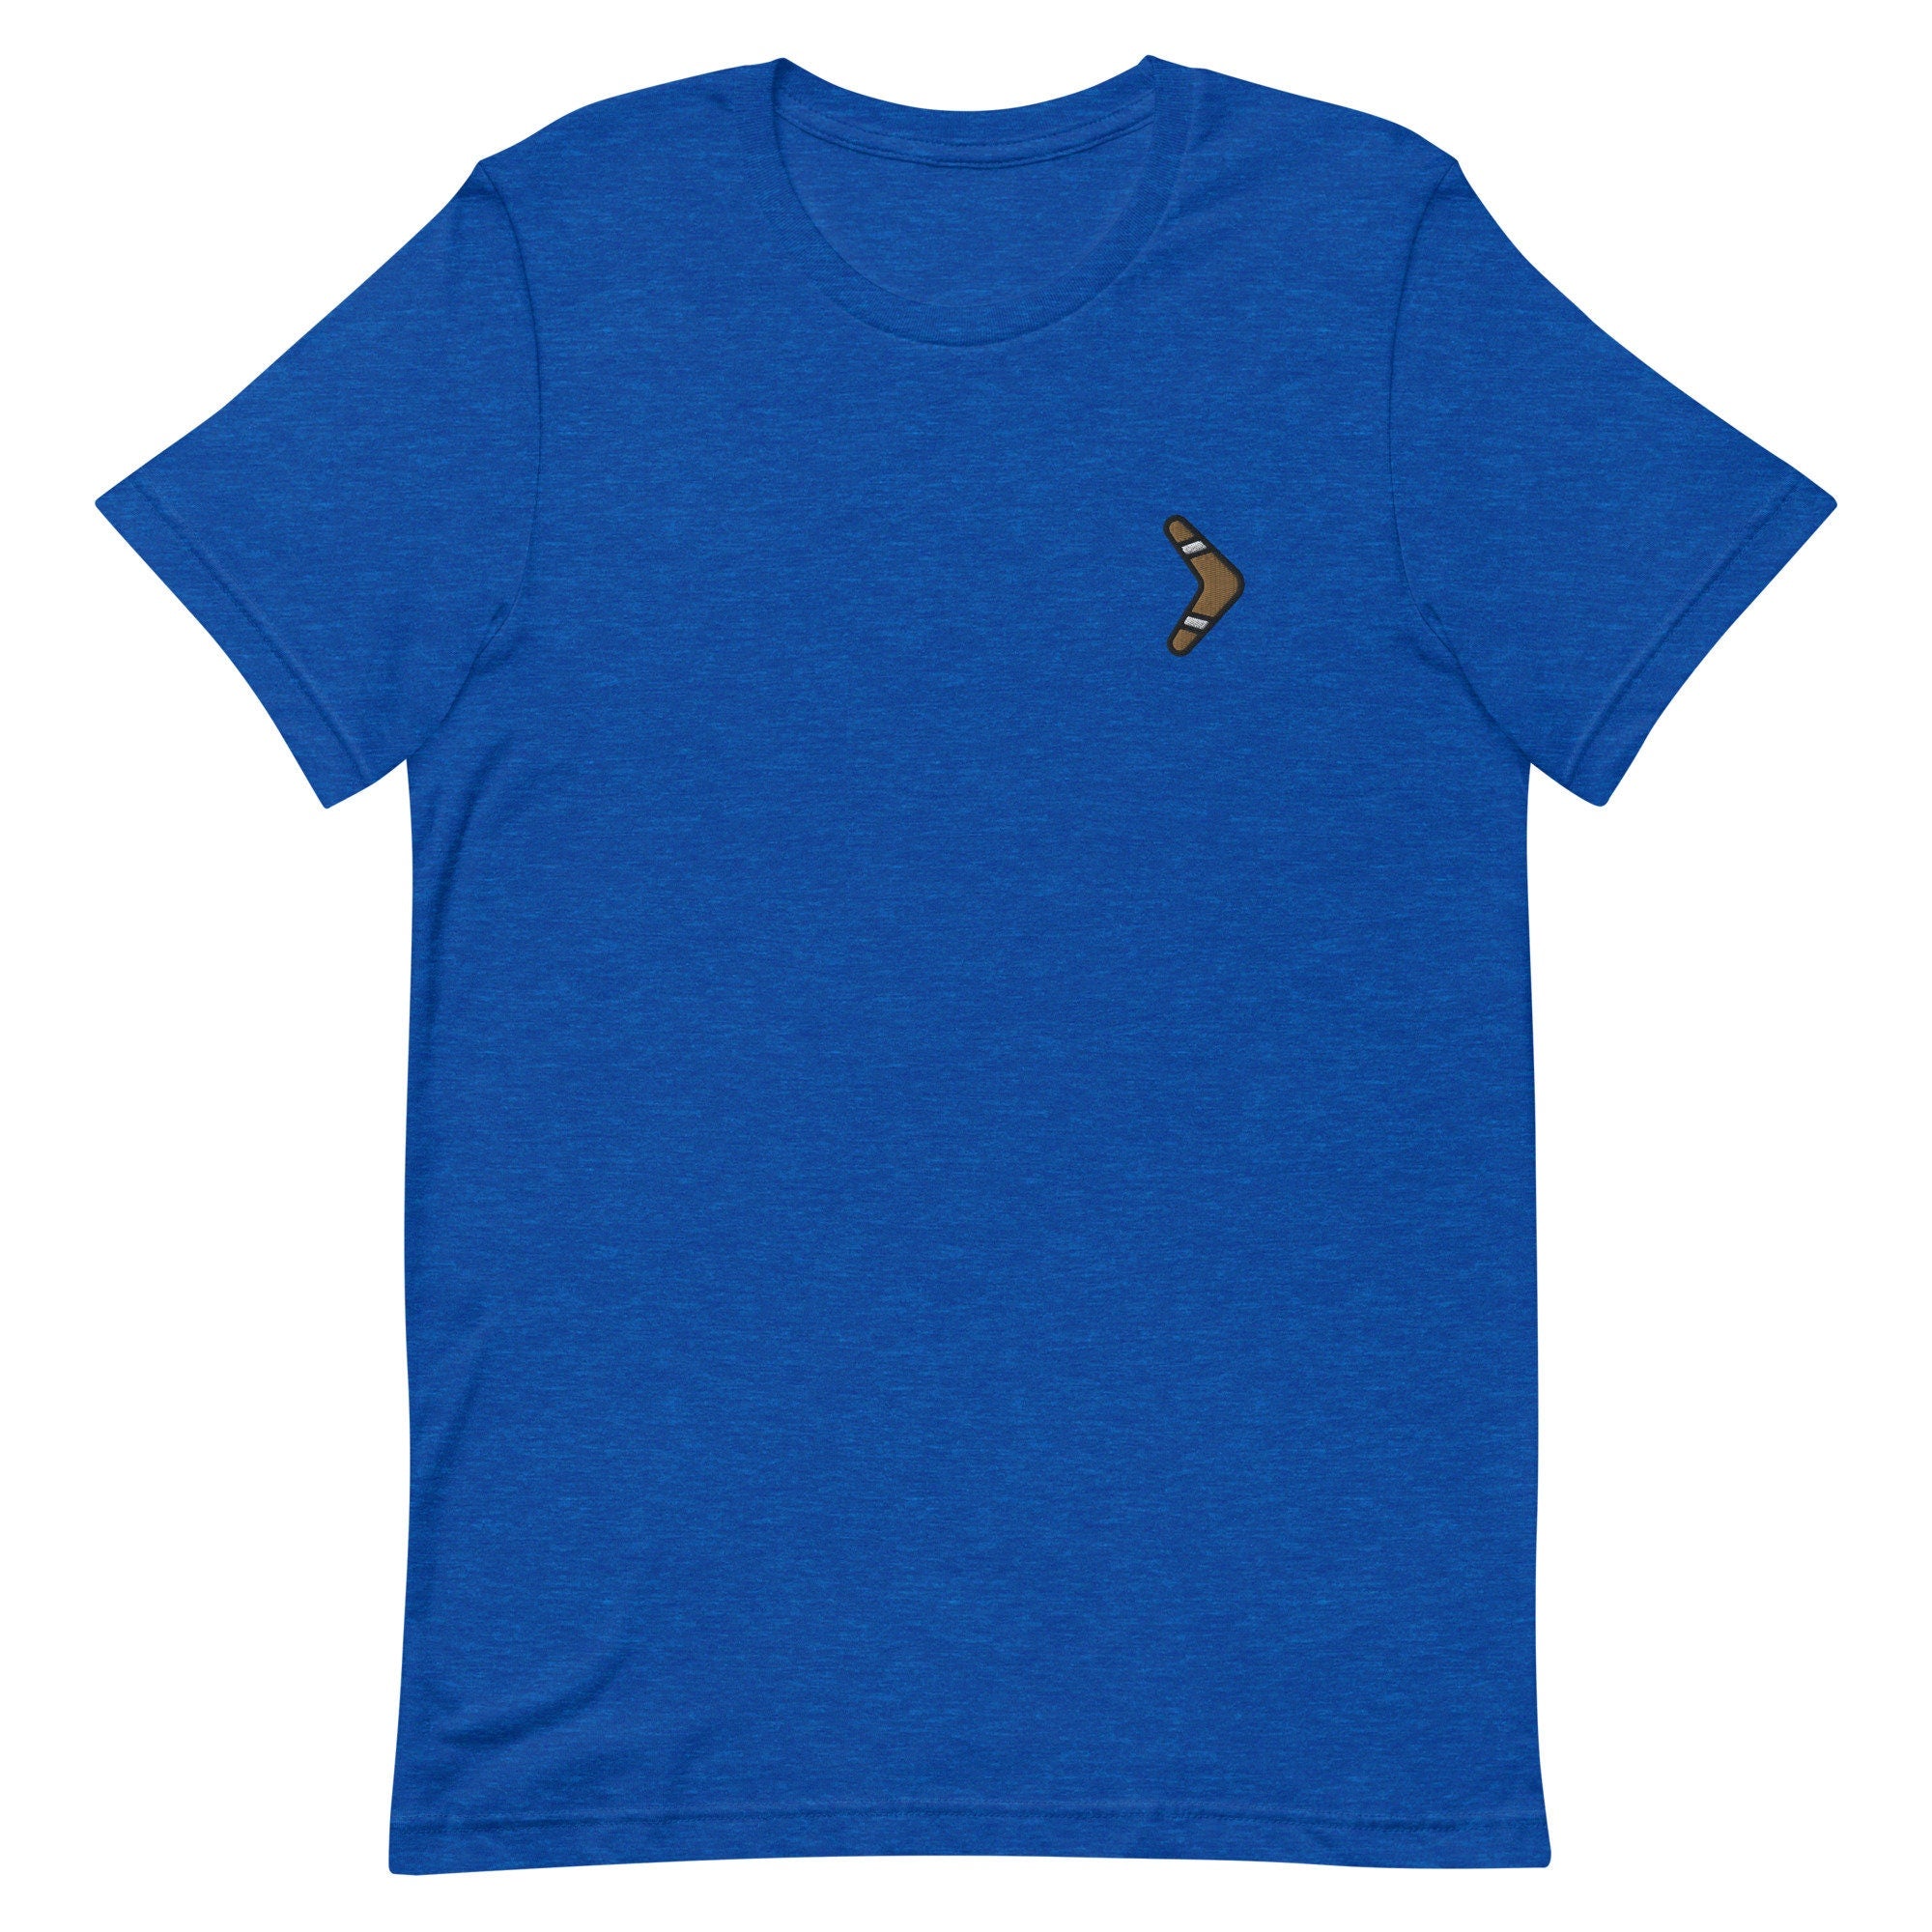 Boomerang Premium Men's T-Shirt, Embroidered Men's T-Shirt Gift for Boyfriend, Men's Short Sleeve Shirt - Multiple Colors